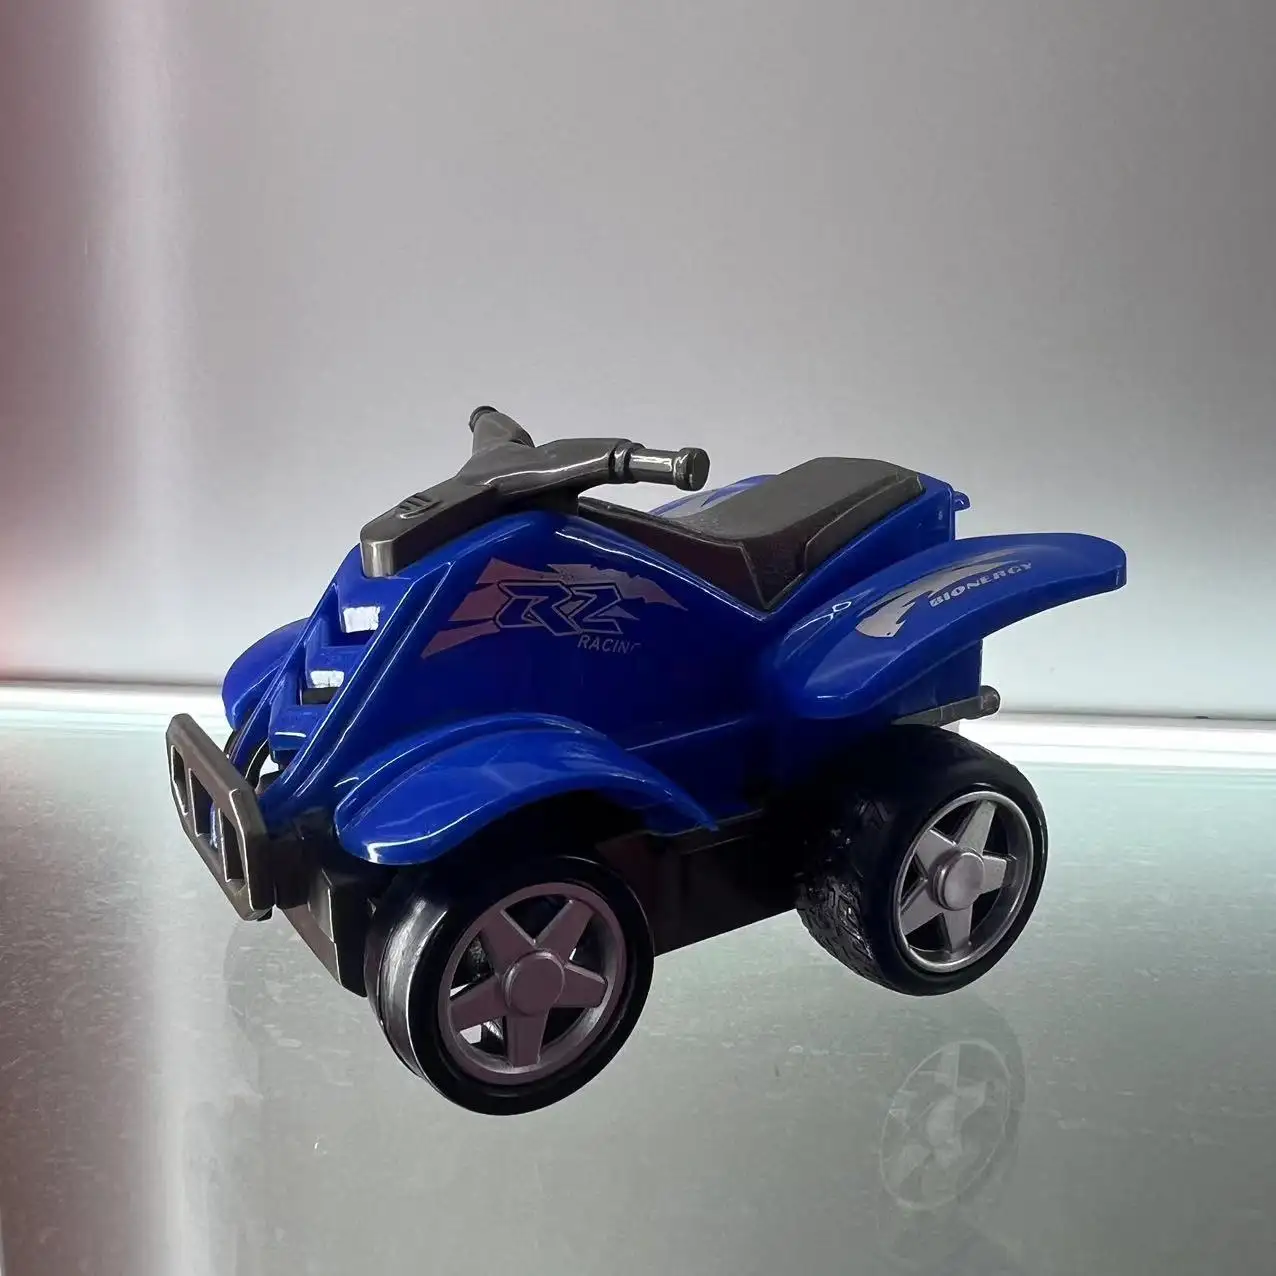 New all-terrain vehicle ATV kids toys model